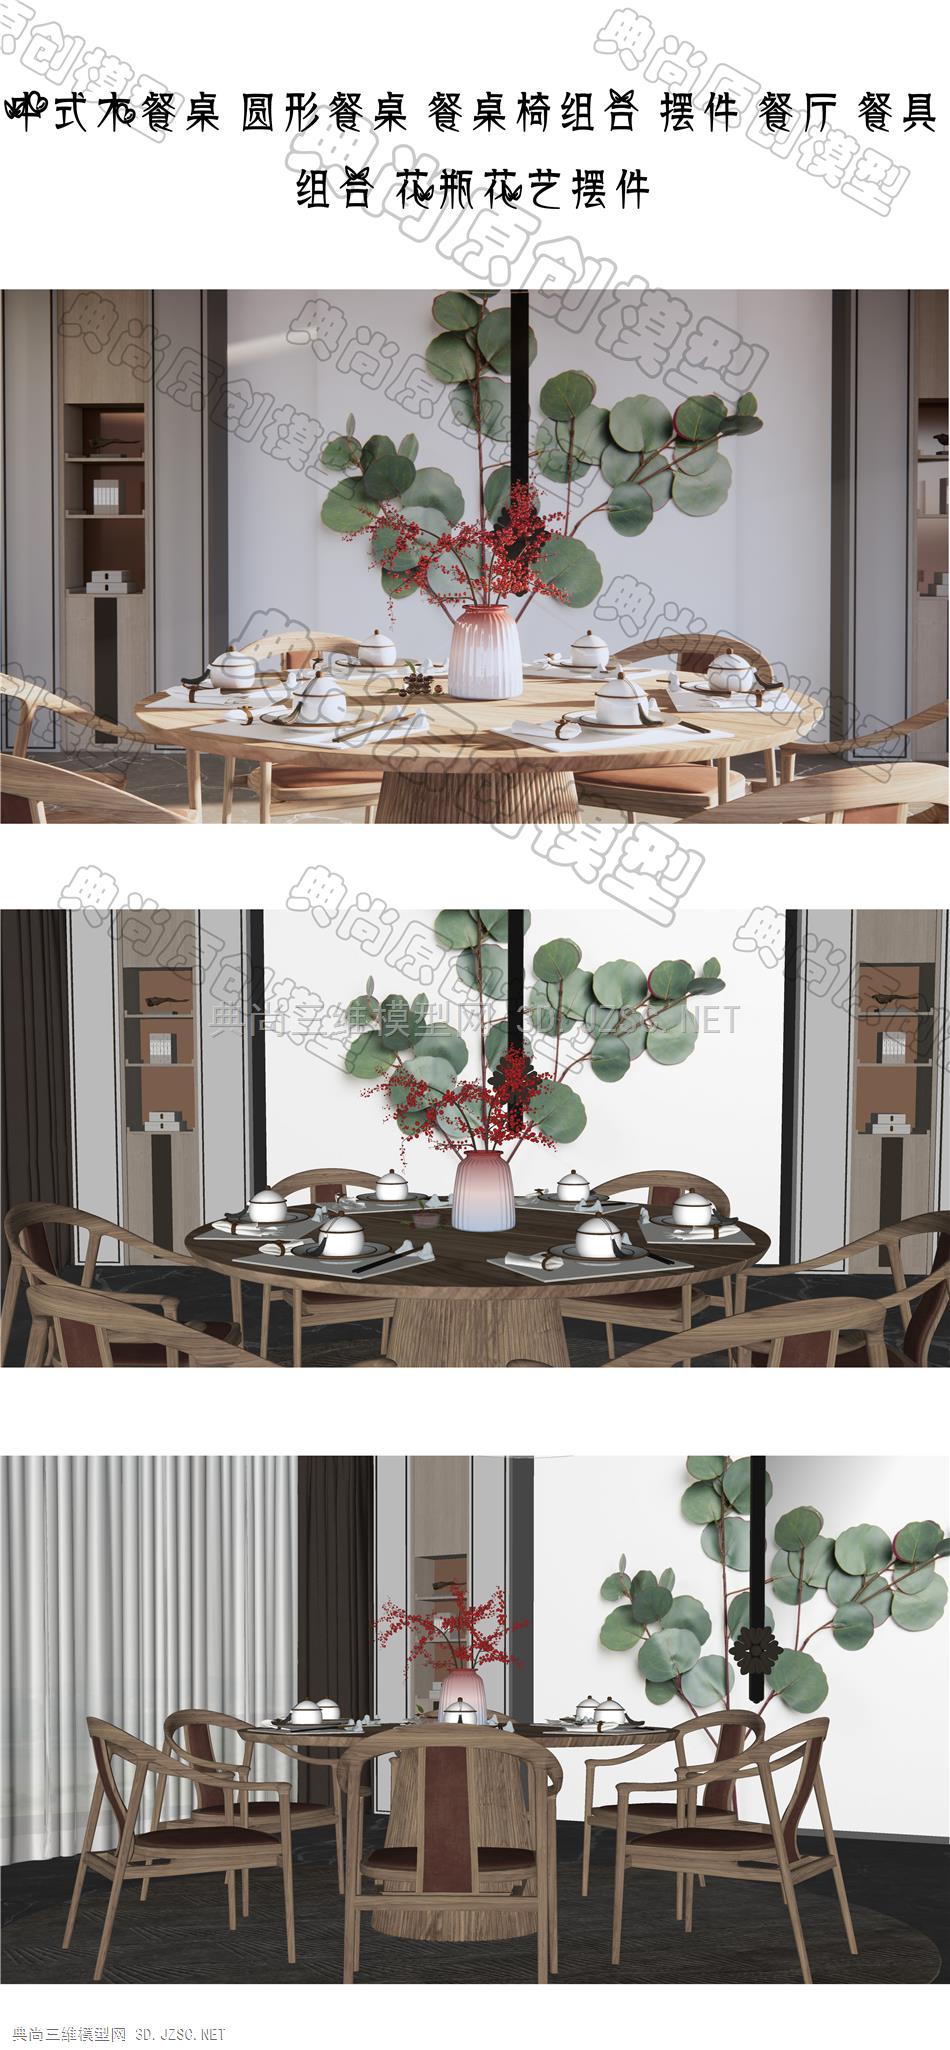 中式木餐桌 圆形餐桌 餐桌椅组合 摆件 餐厅 餐具组合 花瓶花艺摆件 